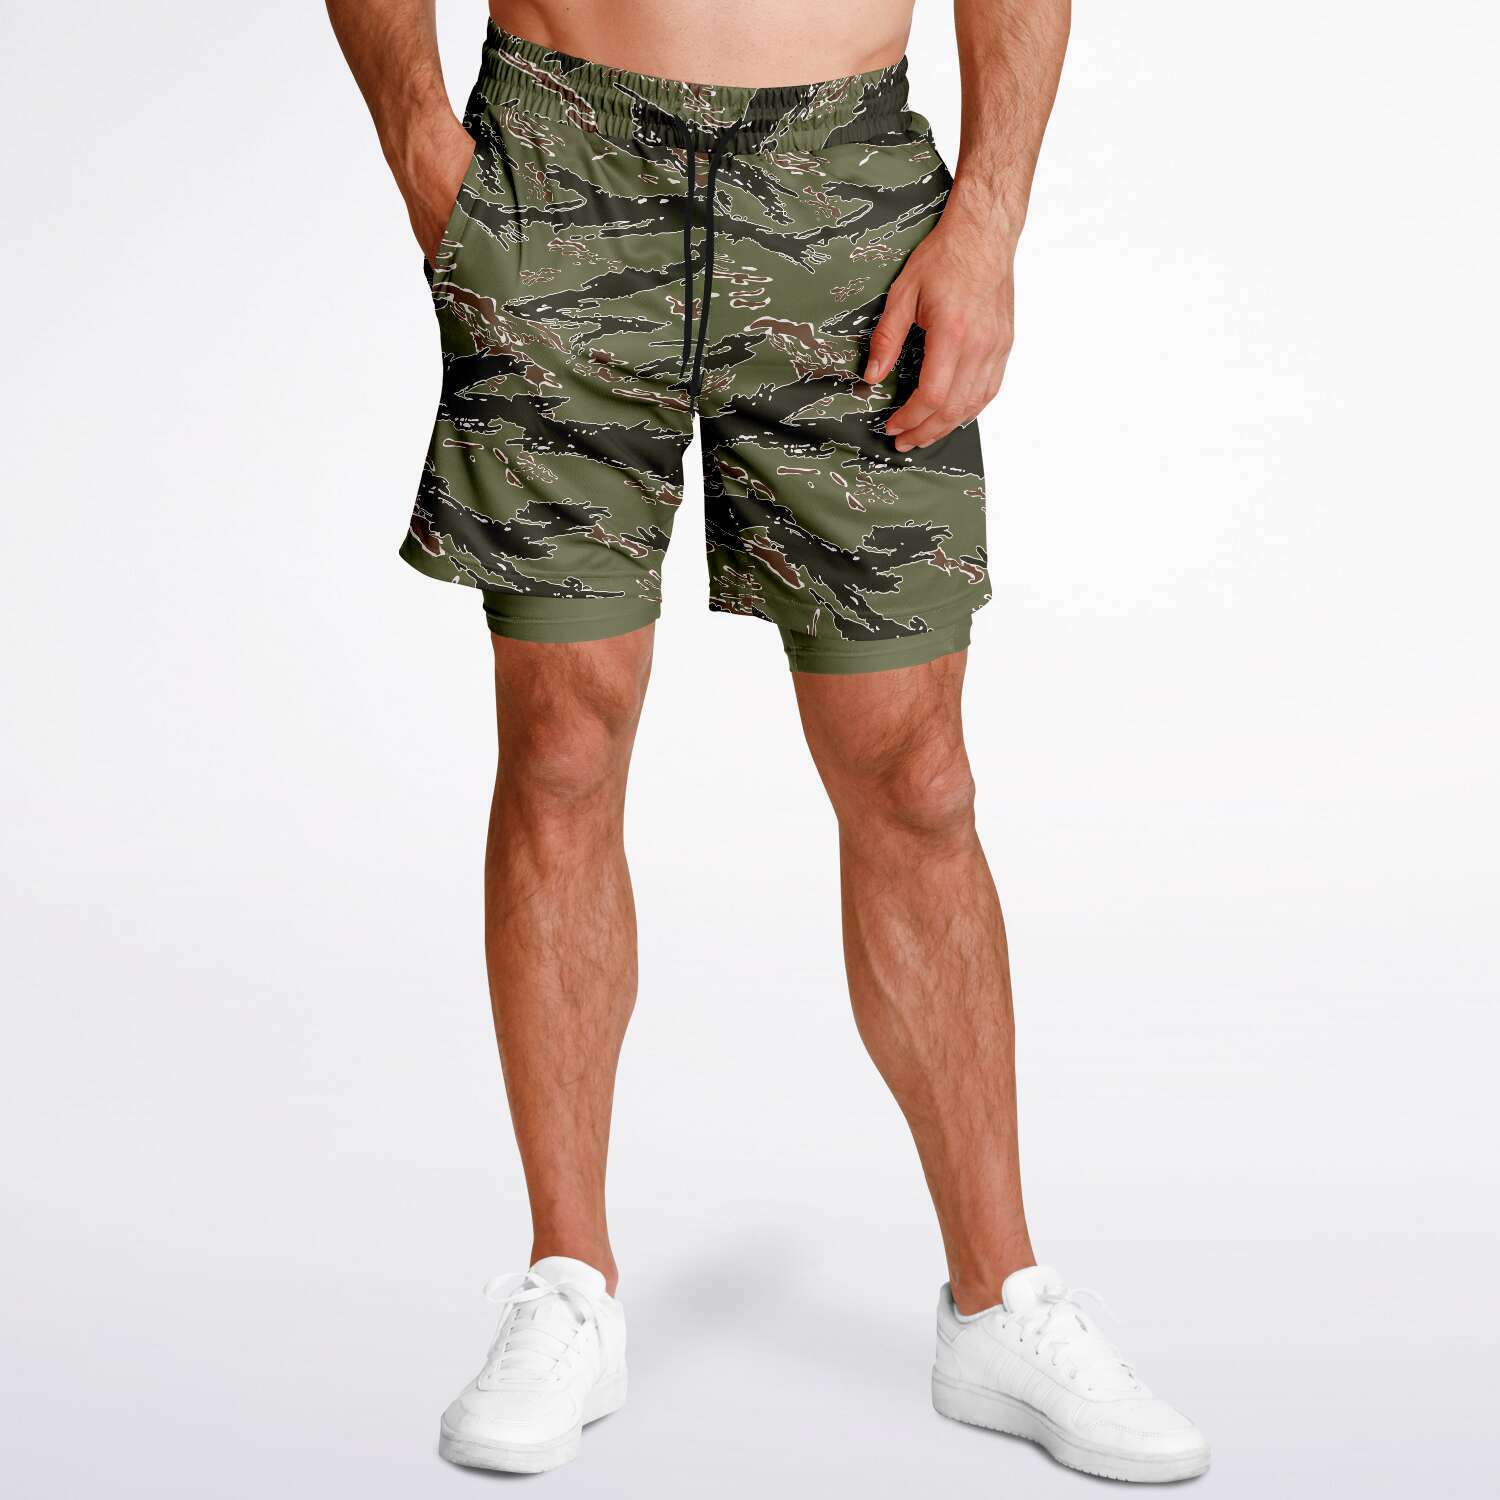 Striped Green Camo Swim Shorts - 3